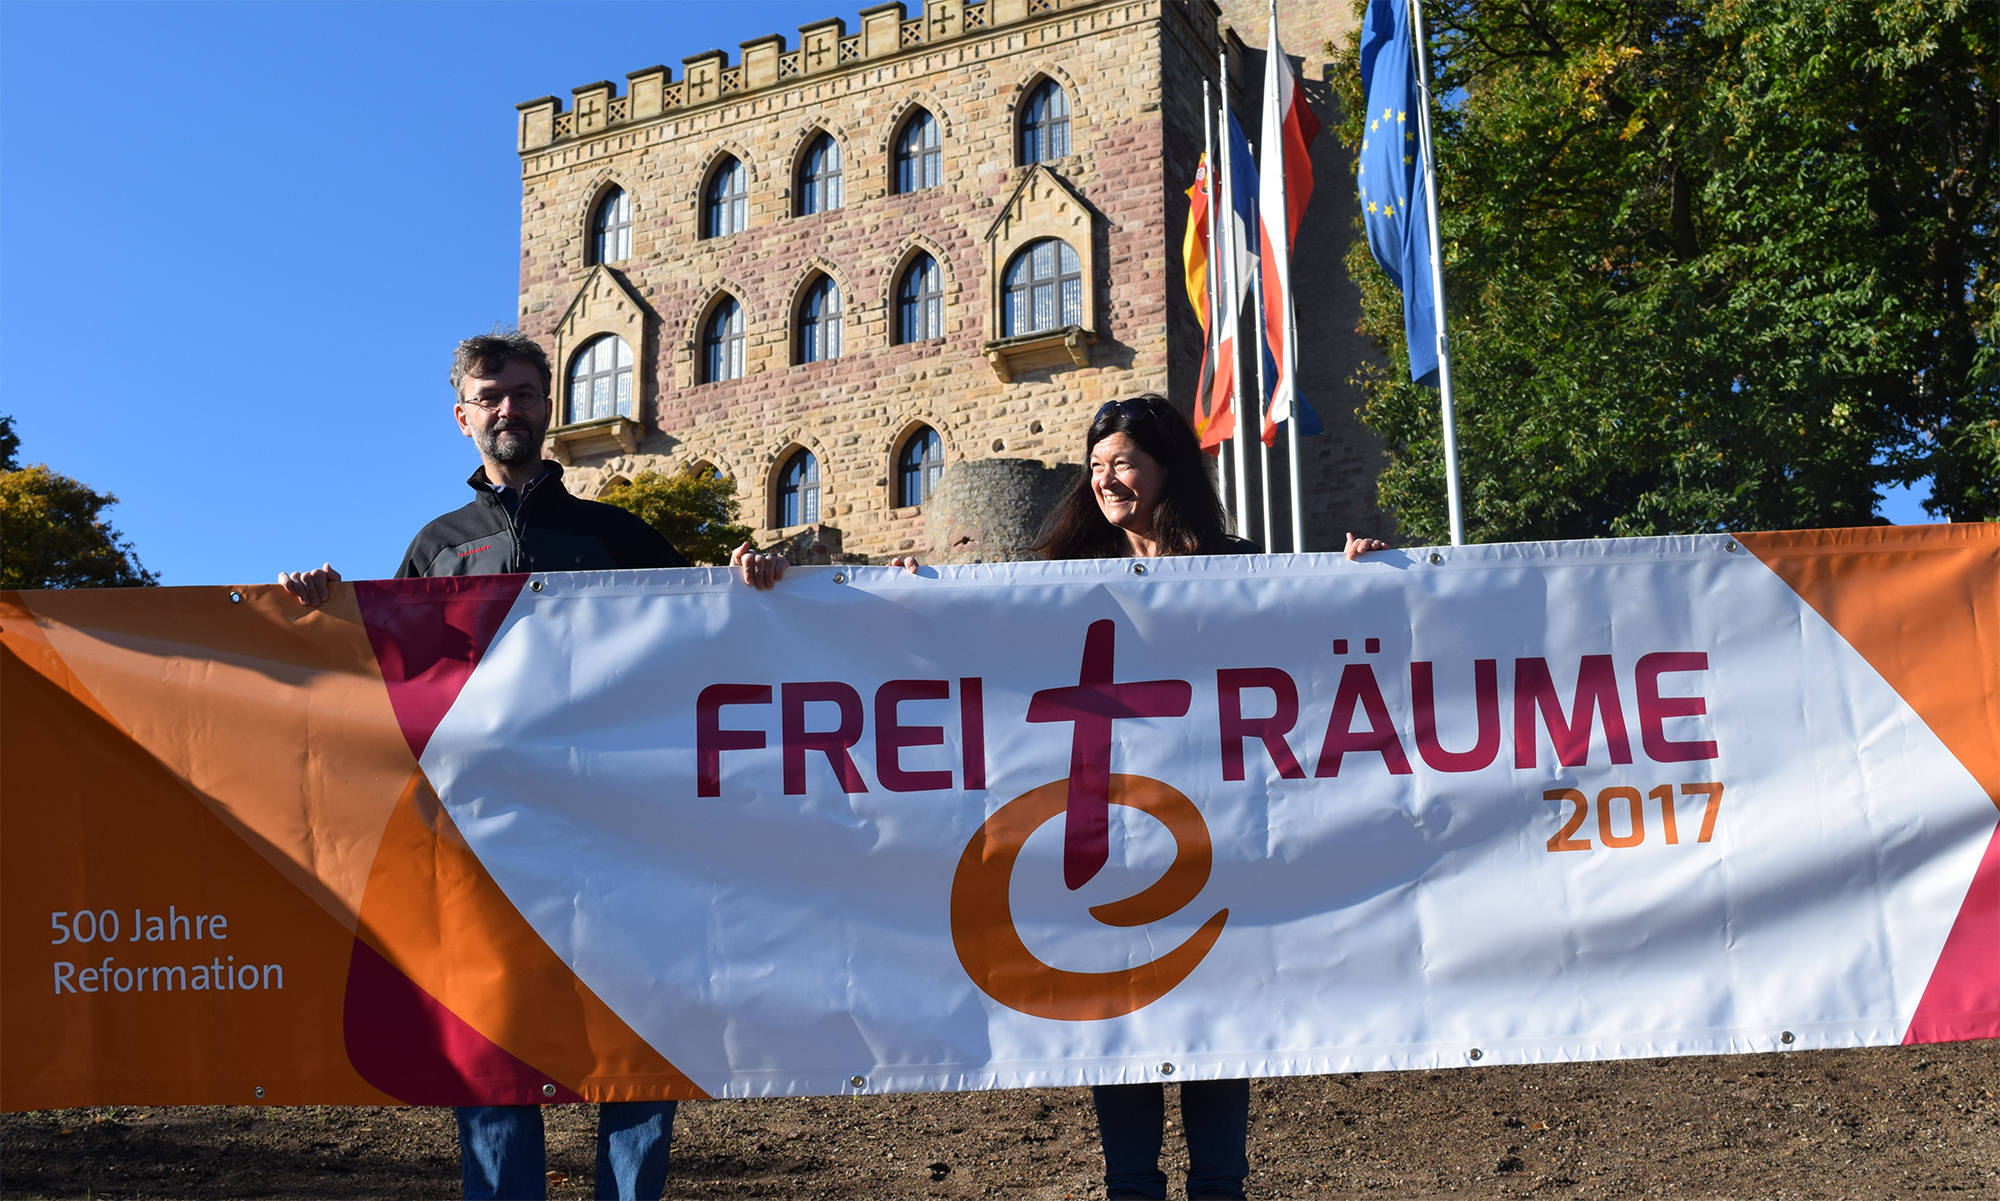 Ob Hambacher Schloss oder Martin-Butzer-Haus – das Logo FreiTräume sieht überall glänzend aus und gibt dem Geist der Orte einen Namen. Landesjugendpfarrer Geith und Öffentlichkeitsreferentin Deutschel stellten das Banner vor.